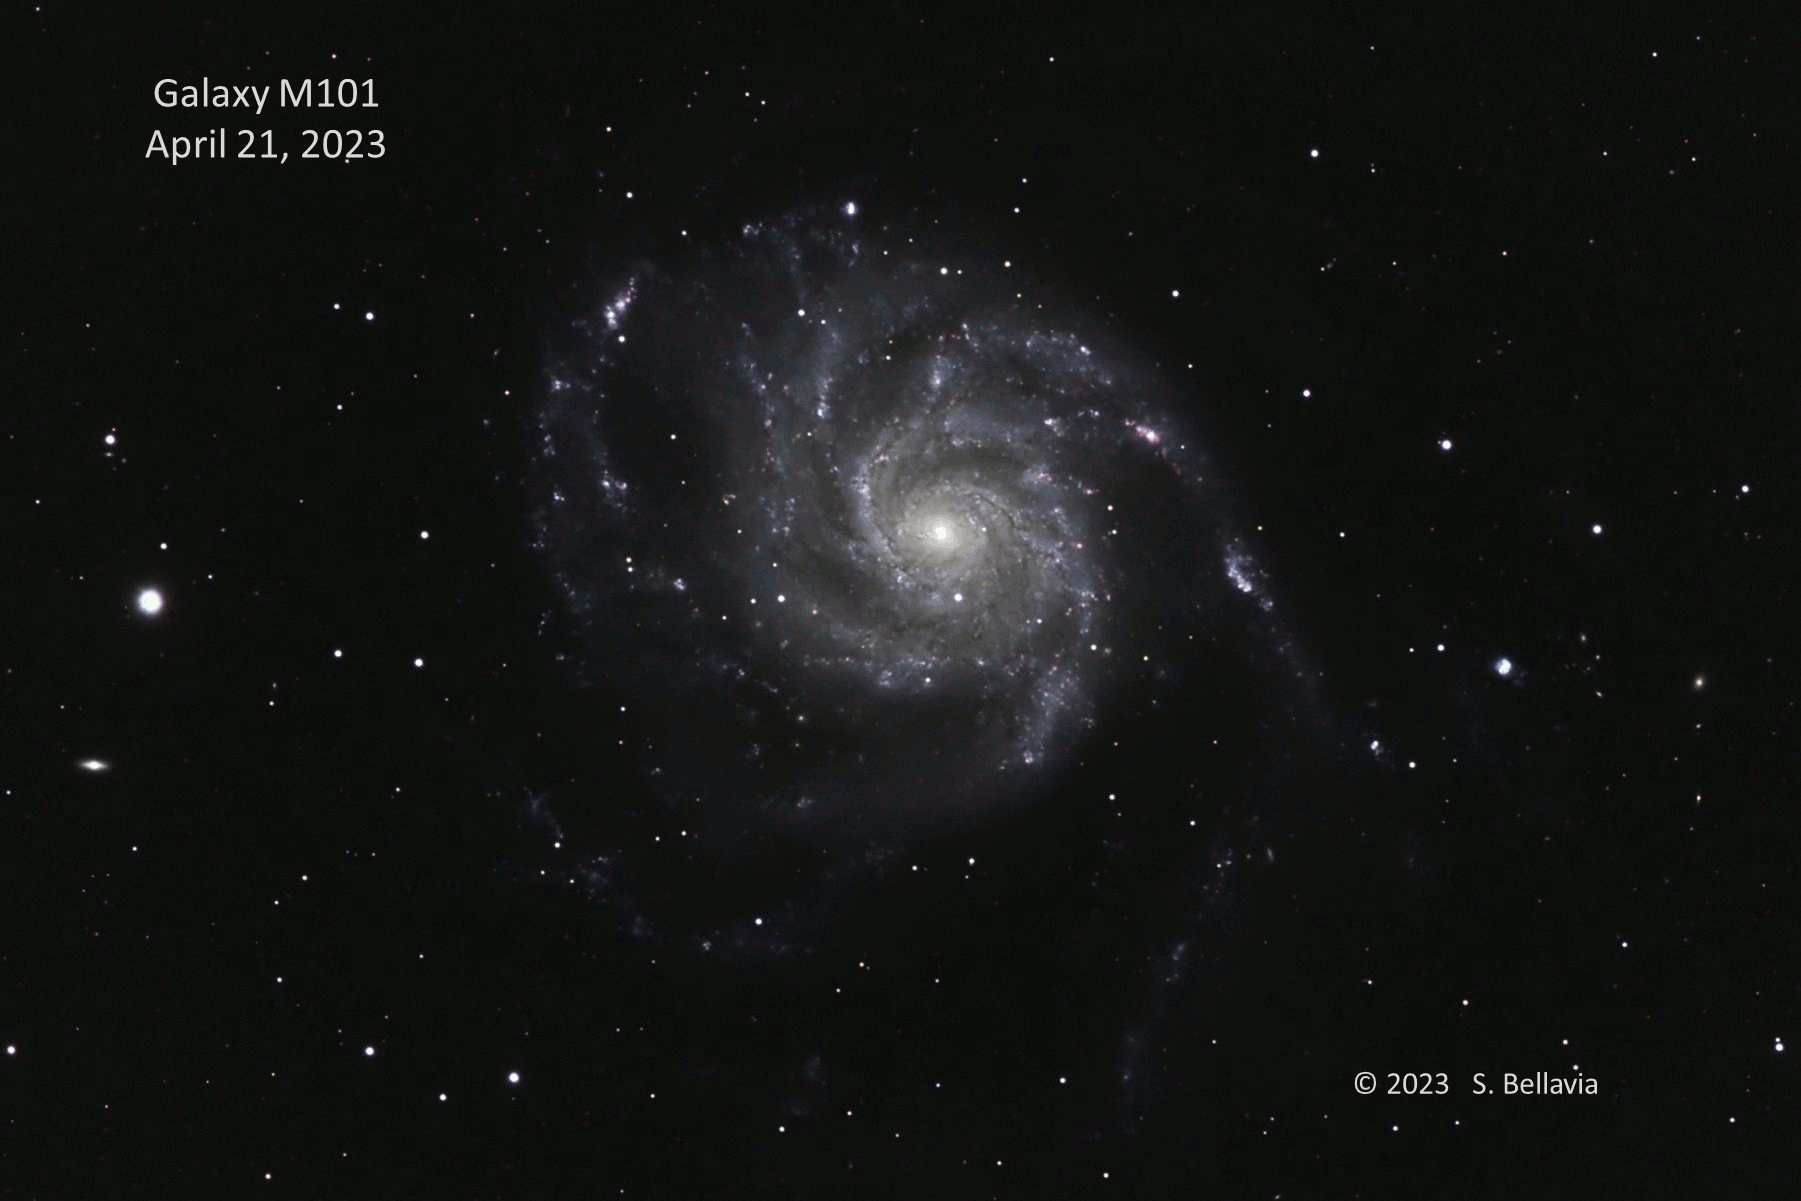 Animación que muestra una estrella brillante apareciendo en una galaxia espiral.